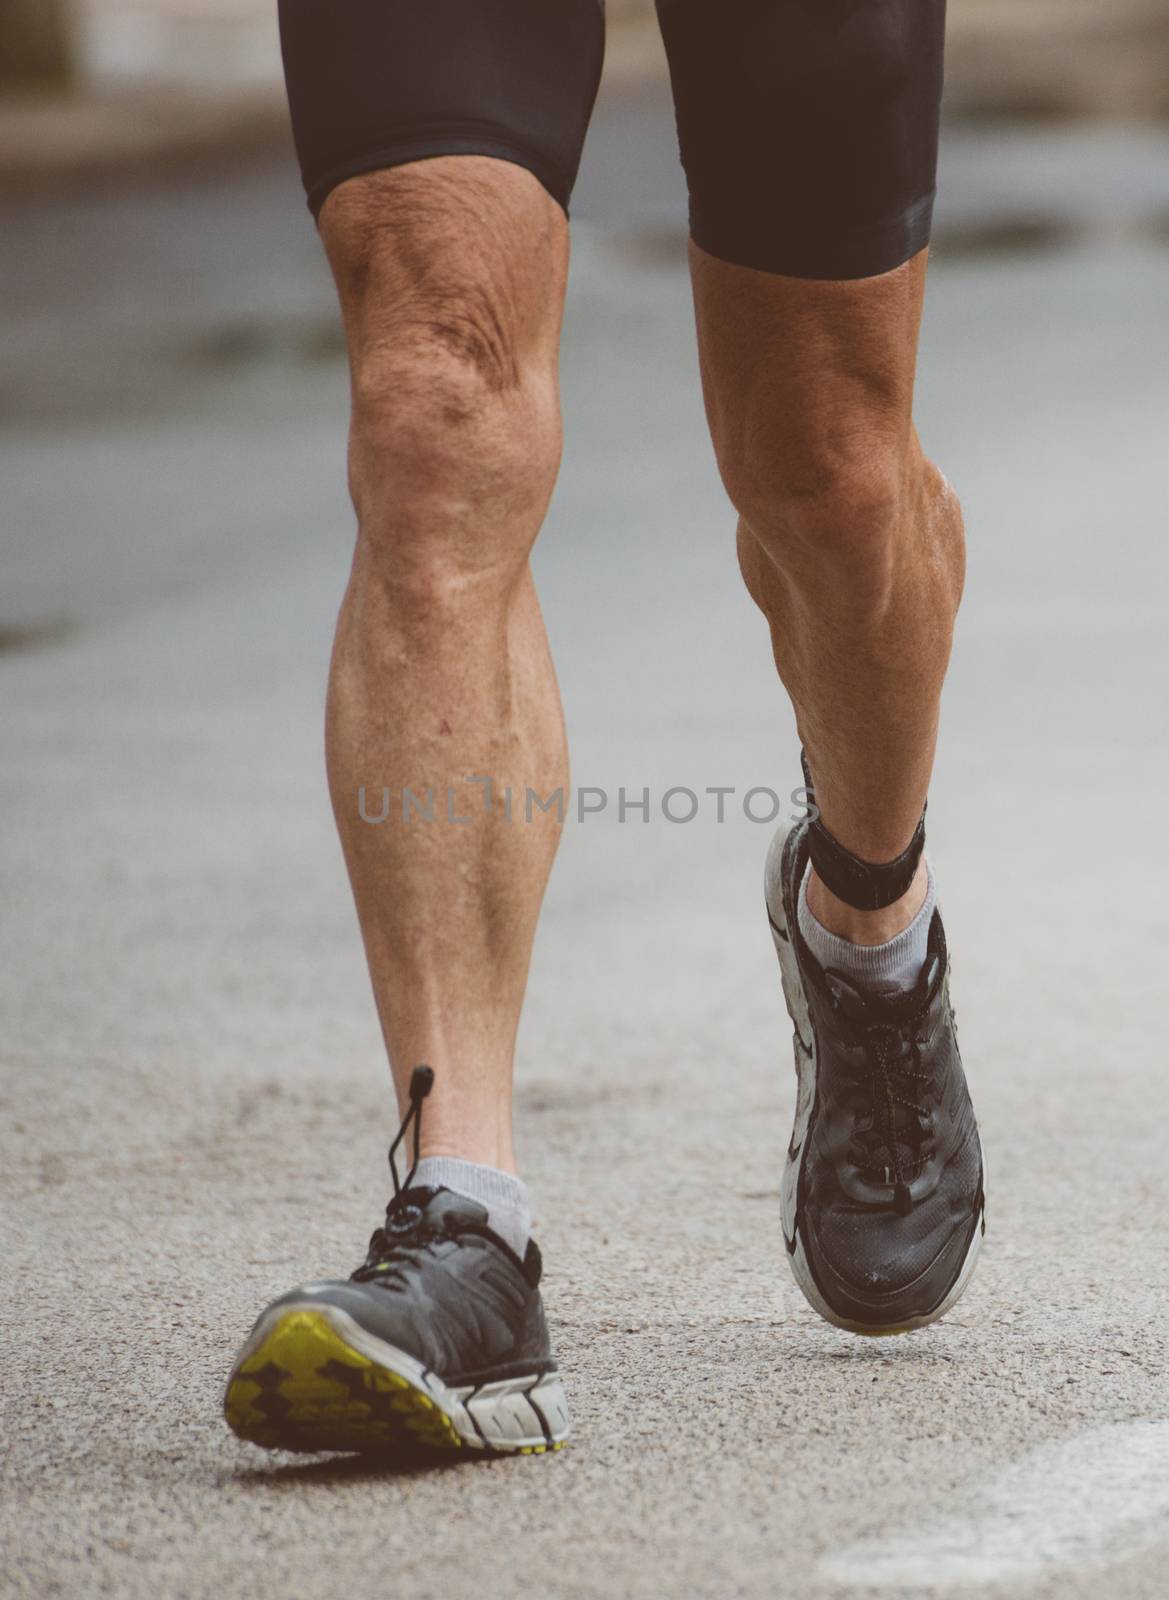 Racewalking. Marathon runner on the street. by dmitrimaruta